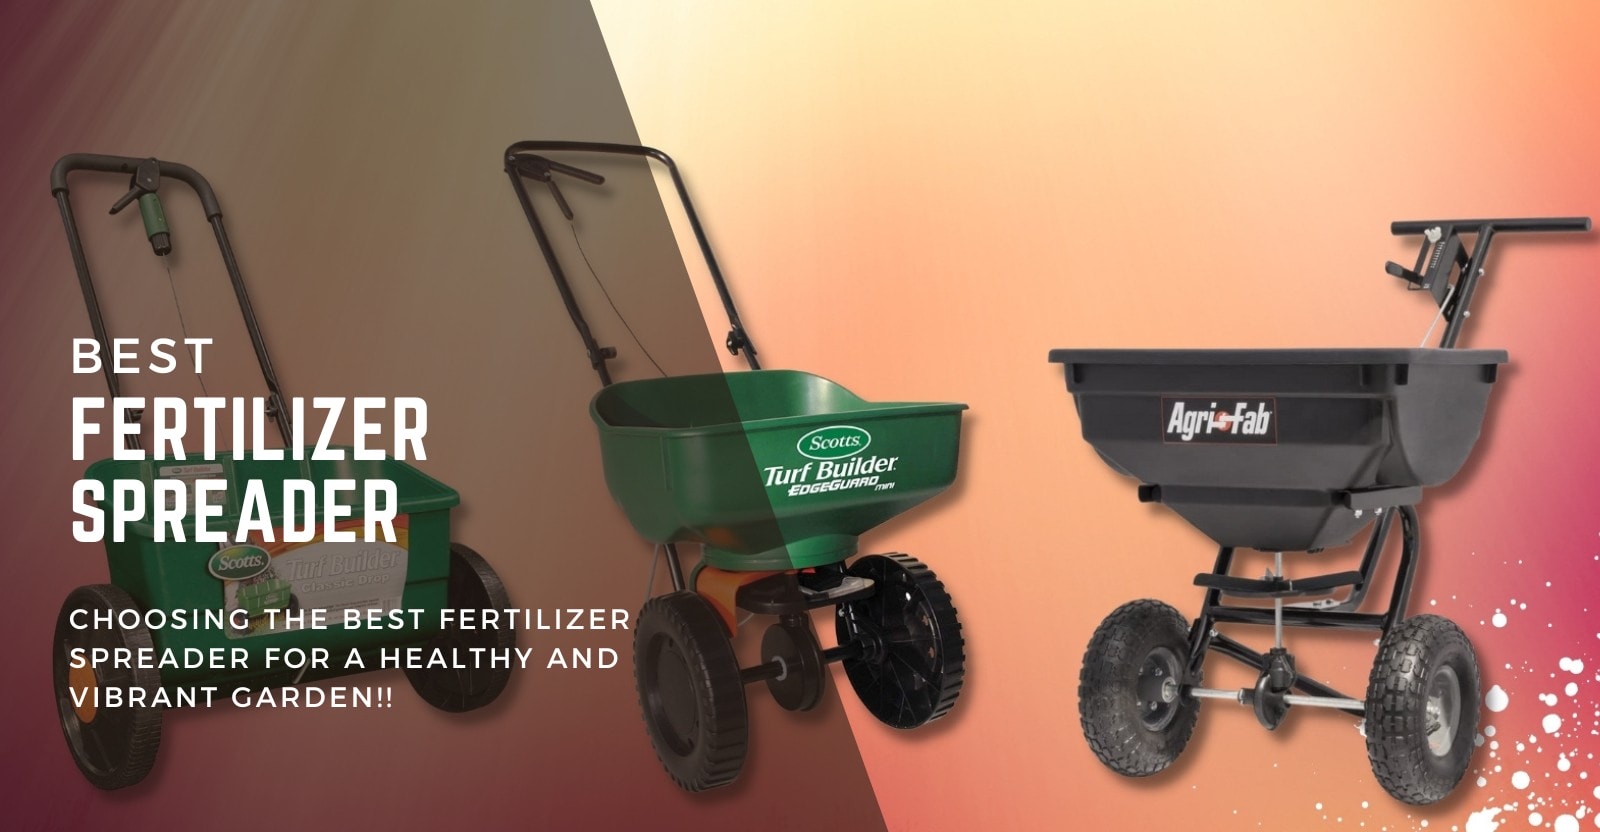 Best Fertilizer Spreader Review